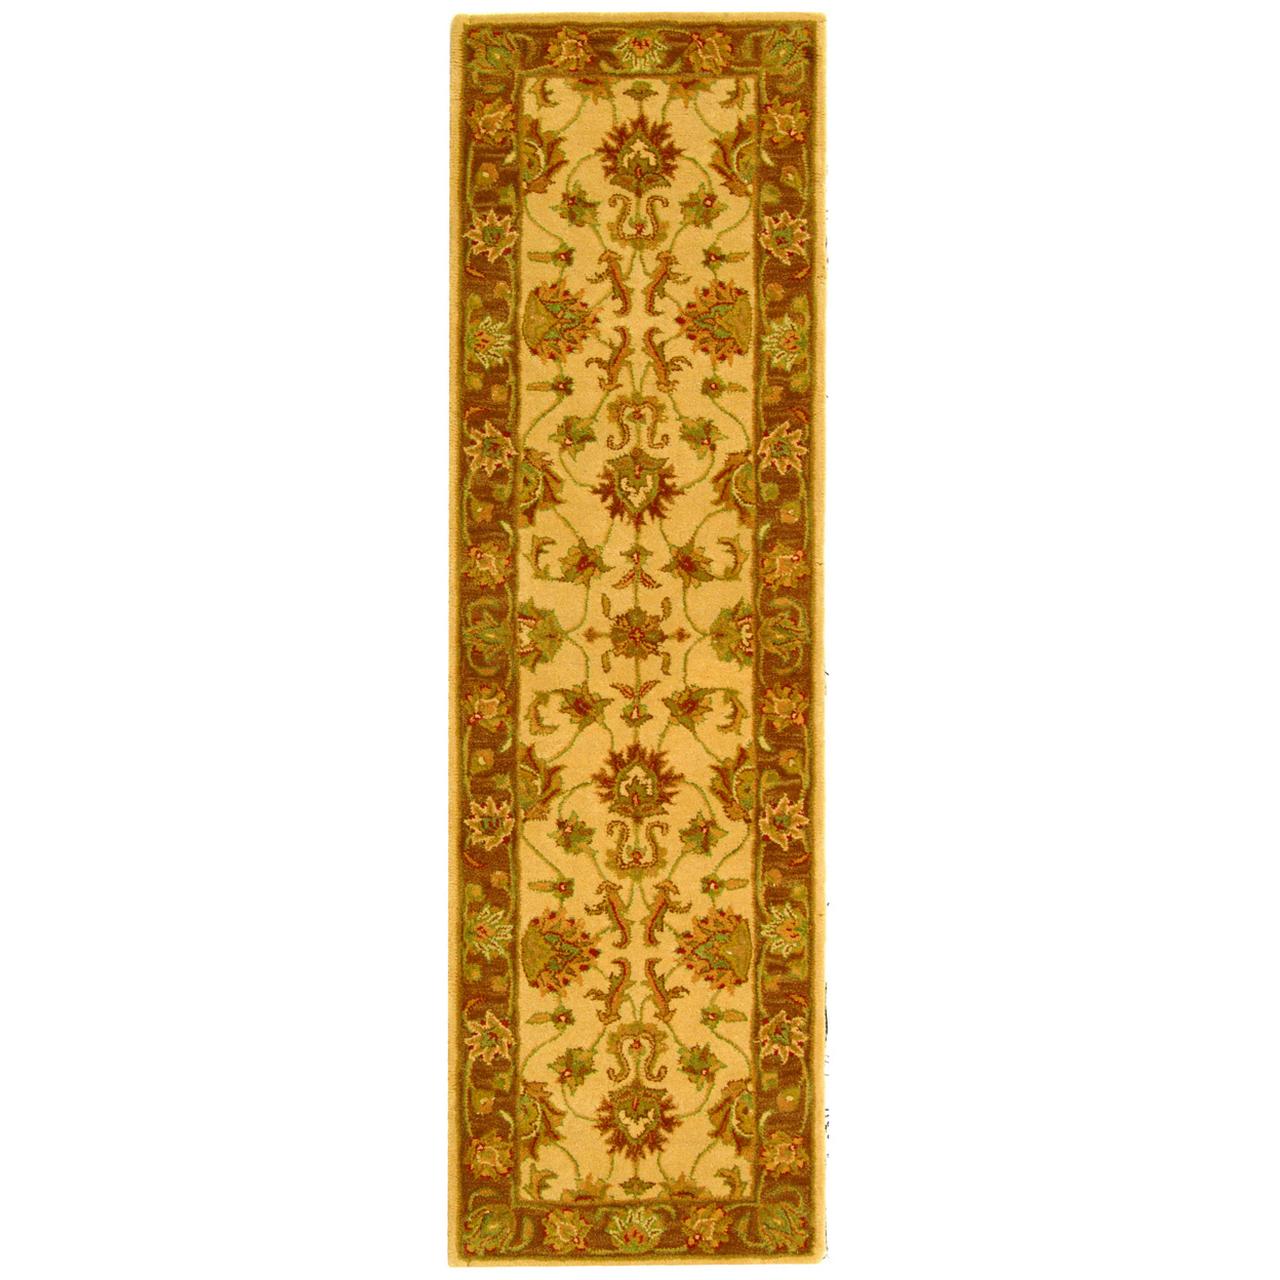 SAFAVIEH Heritage Regis Traditional Wool Runner Rug, Ivory/Brown, 2'3" x 12' - image 1 of 9